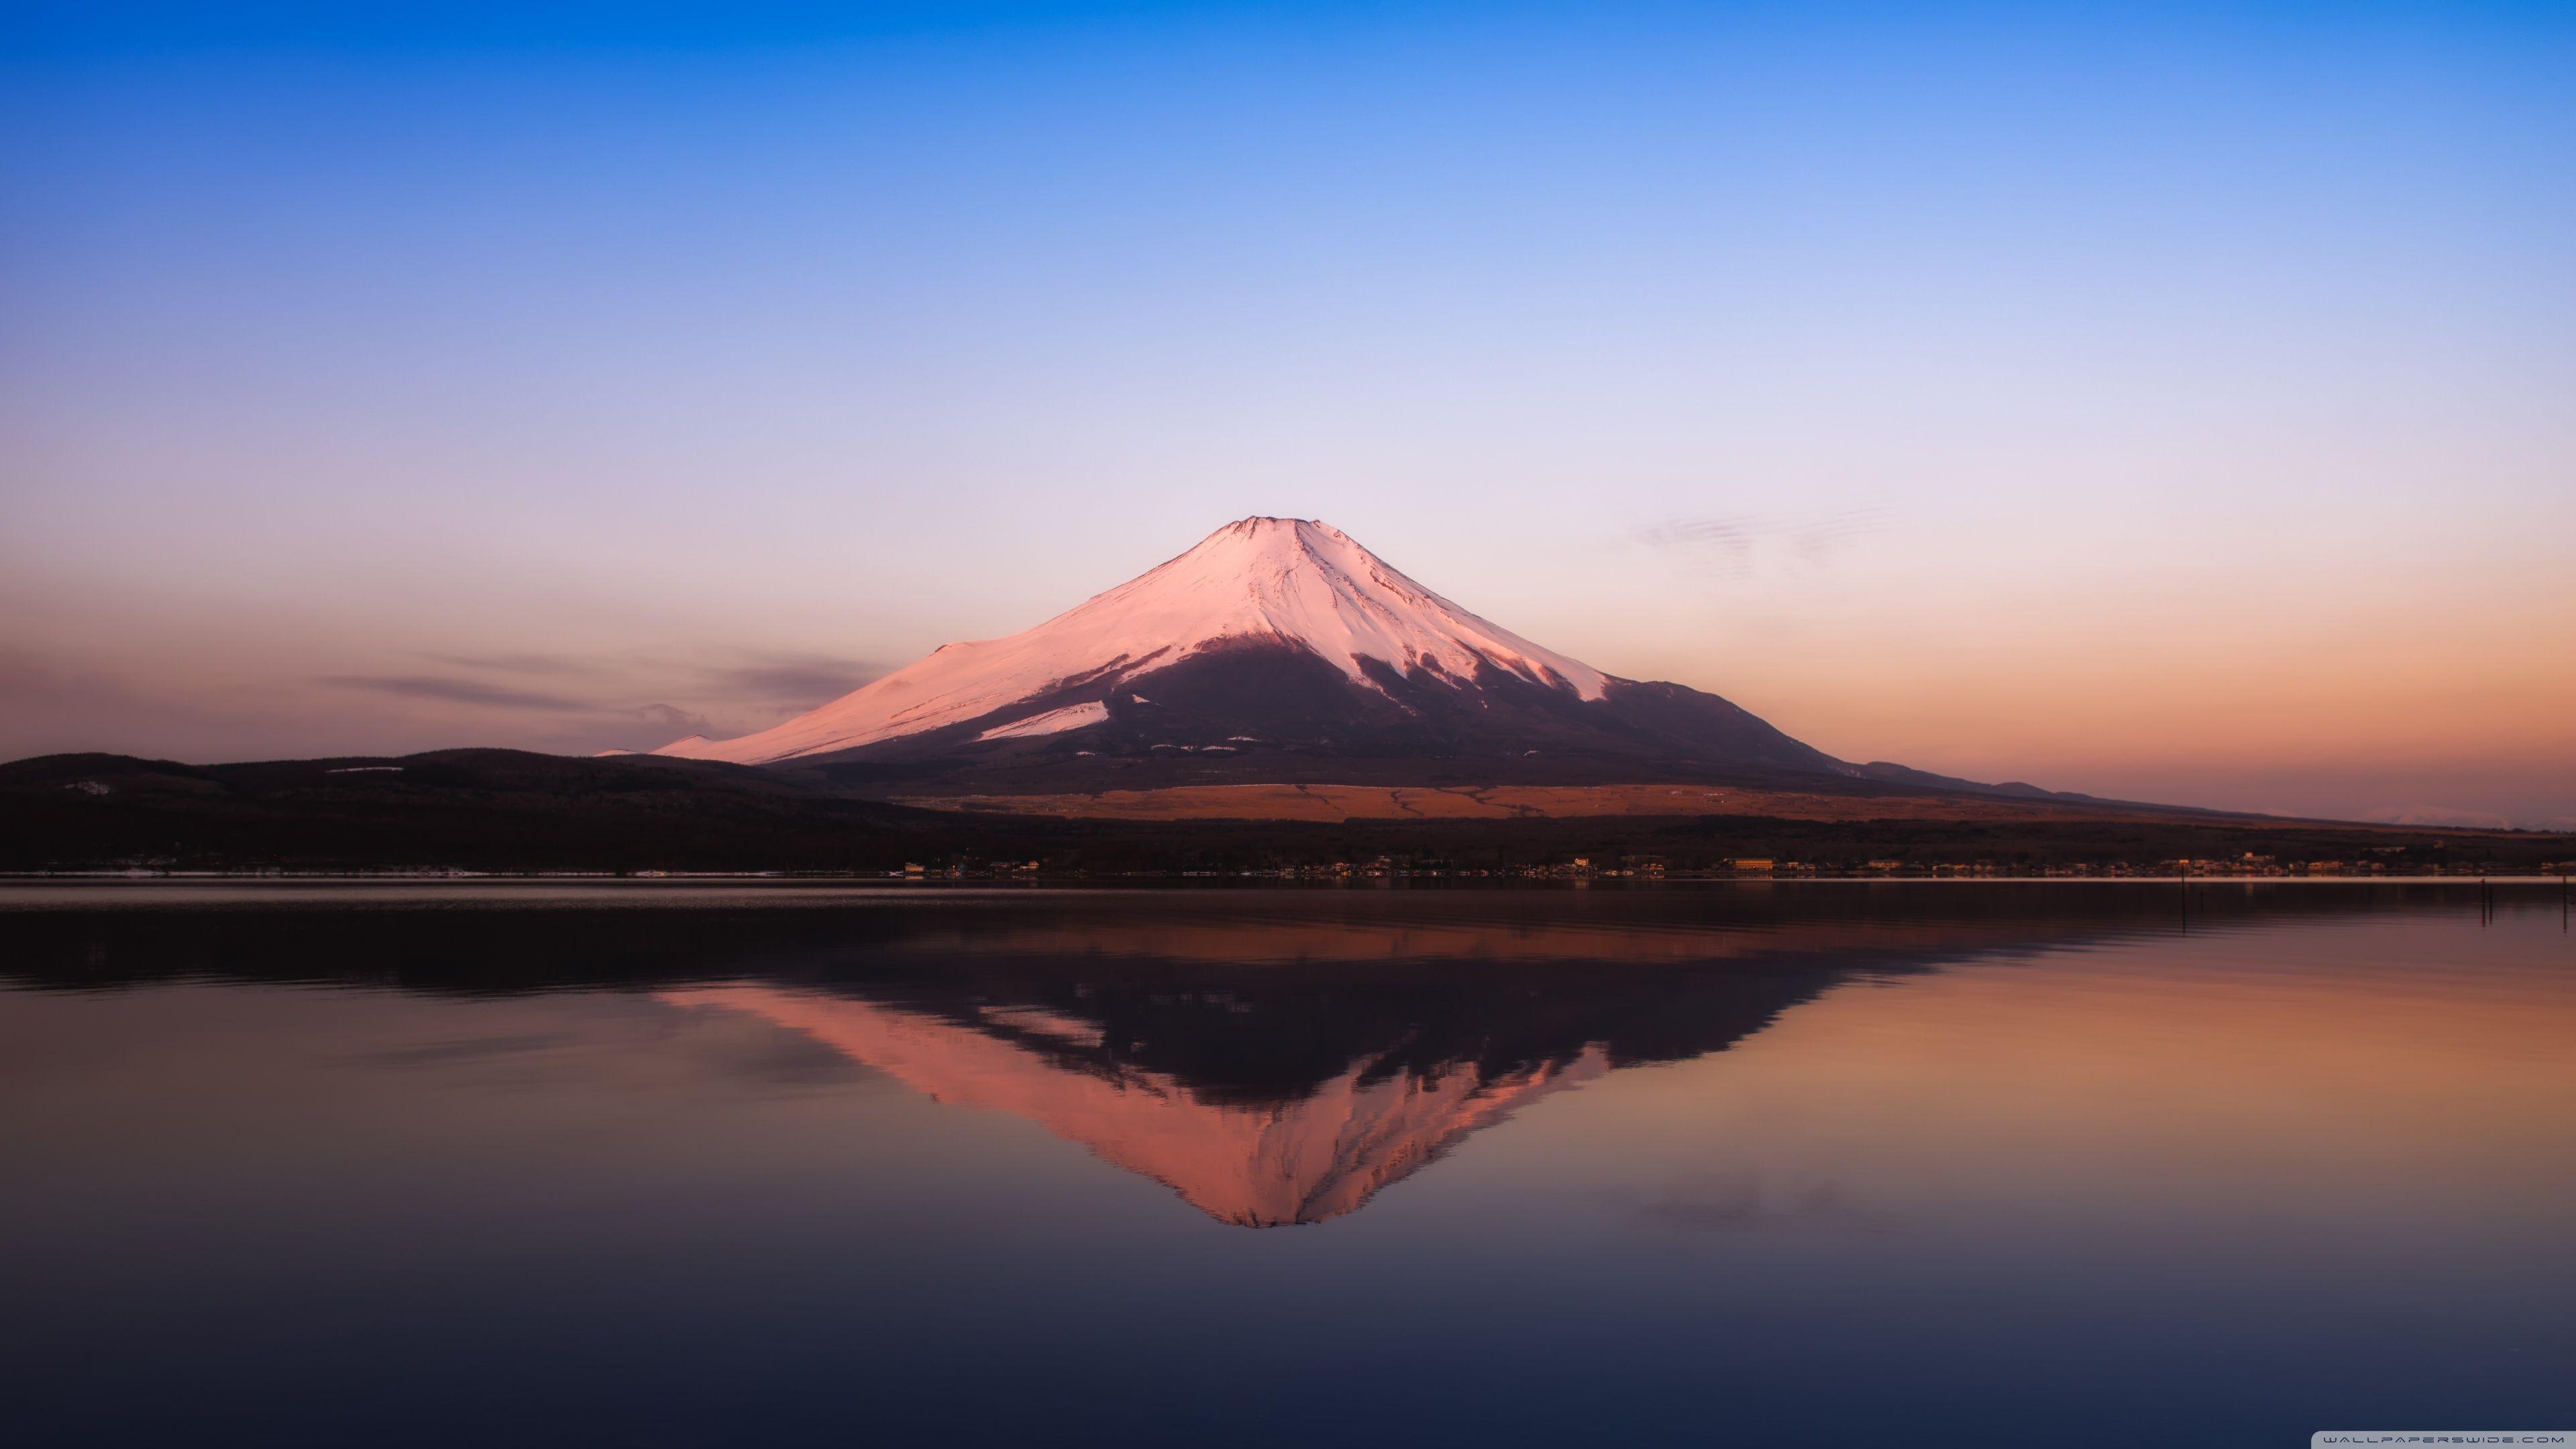 Mt Fuji Wallpaper 71 pictures